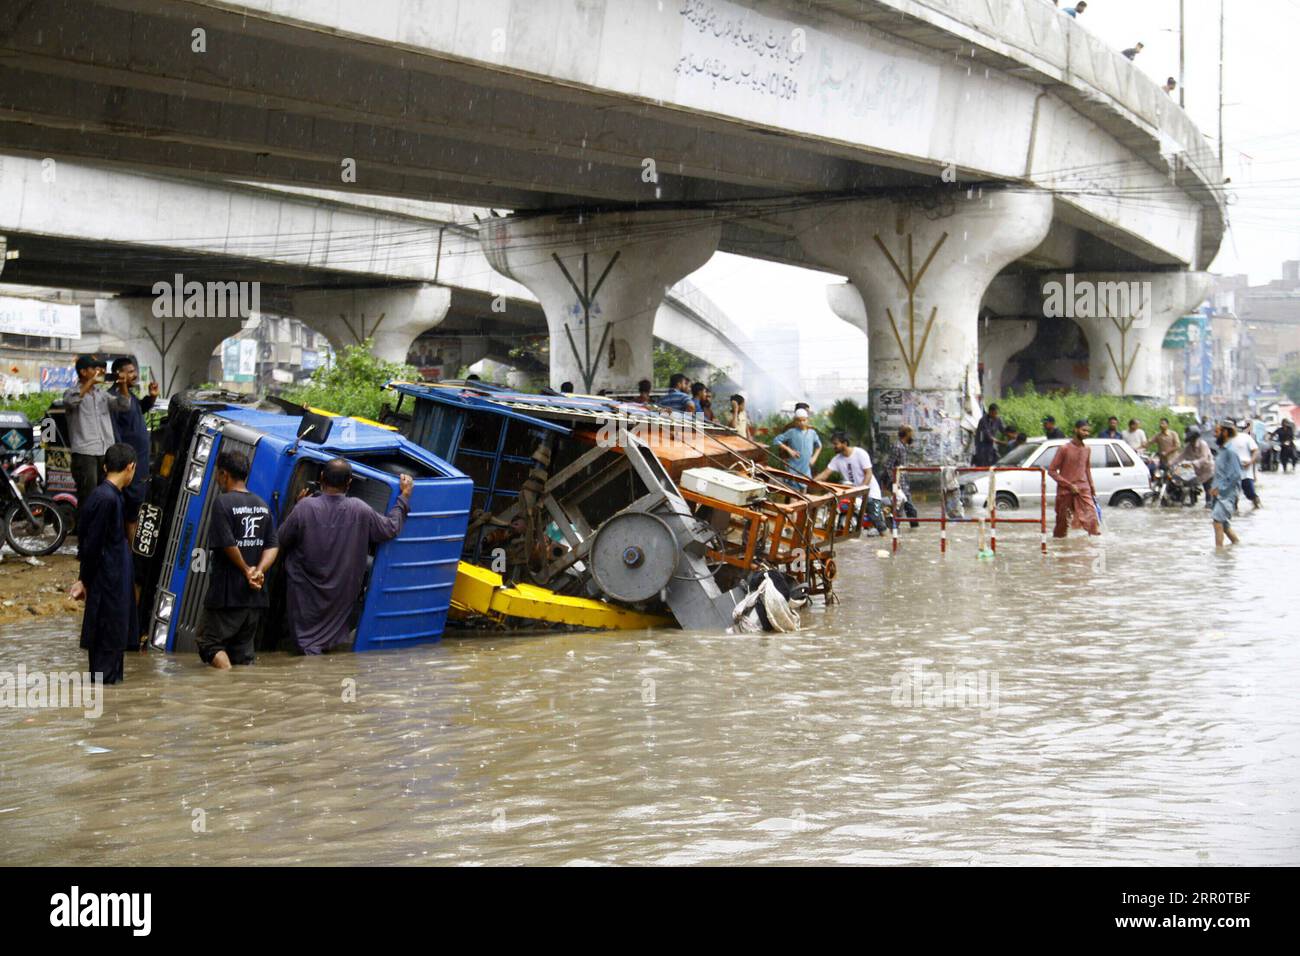 200826 -- KARACHI, 26. August 2020 -- ein umgestürztes Fahrzeug wird nach starkem Monsunregen in der südpakistanischen Stadt Karachi am 25. August 2020 gesehen. Starke Monsunregen haben einen 36 Jahre alten Regensaldo im Monat August in der Hauptstadt Karachi in der südpakistanischen Provinz Sindh gebrochen, sagte das Pakistan Meteorological Department PMD. Die starken Niederschläge haben in mehreren Teilen der Stadt, in denen das Regenwasser Überschwemmungen, überflutete Straßen, Straßen, Fahrzeuge und tief gelegene Gebiete verursachte, Verwüstung verursacht. Bei Regenunfällen, einschließlich Stromschlag und Dacheinsturz, starben ebenfalls vier Personen Stockfoto